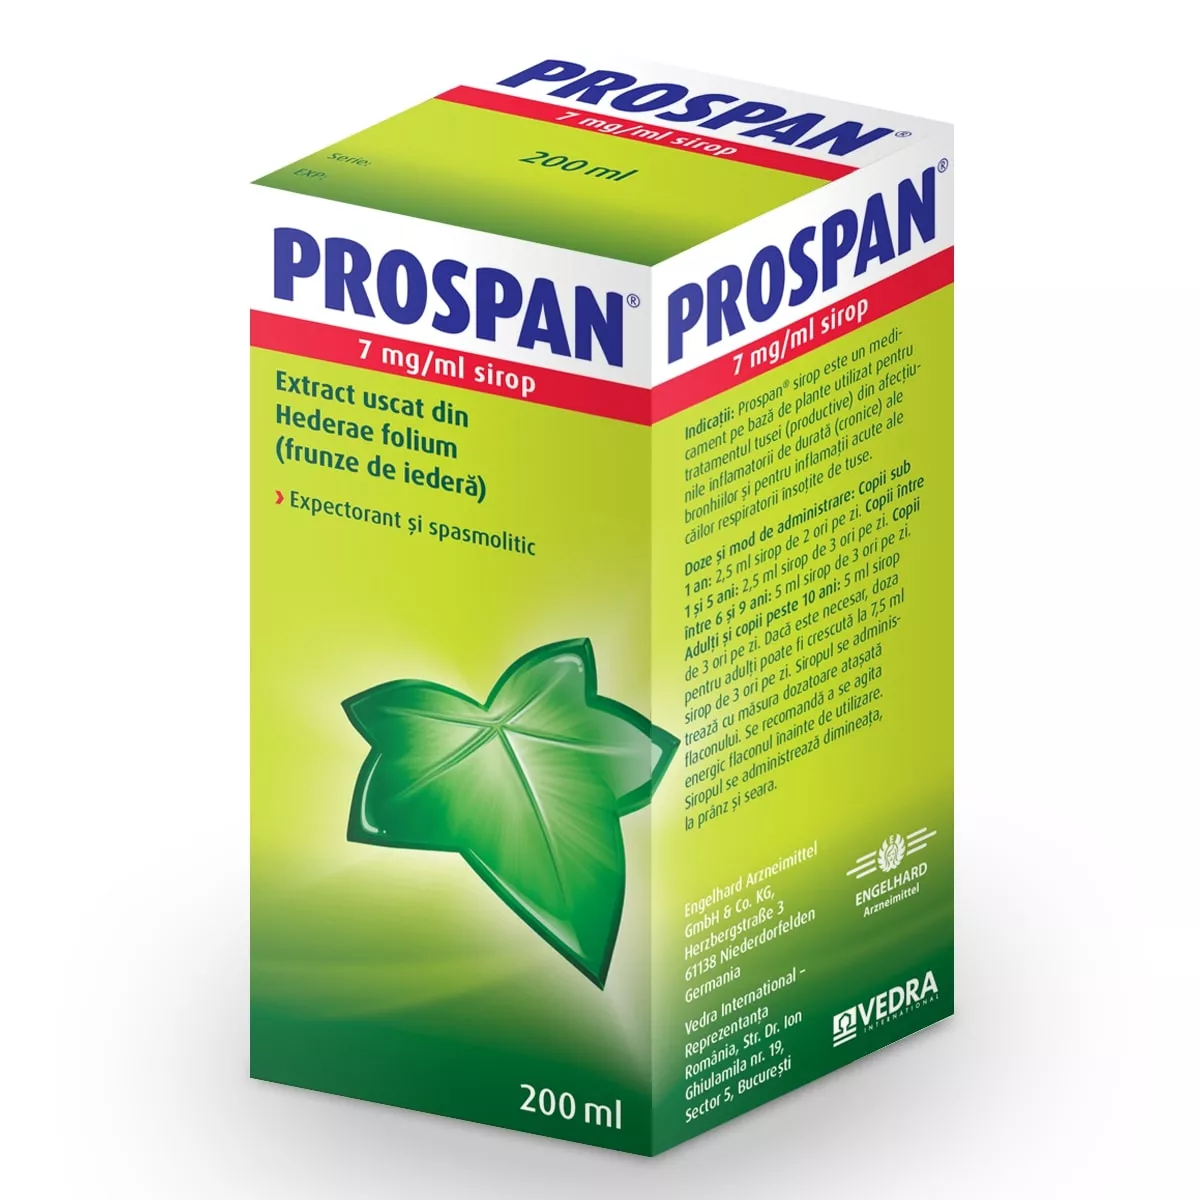 Prospan sirop, 7 mg/ml, 200 ml